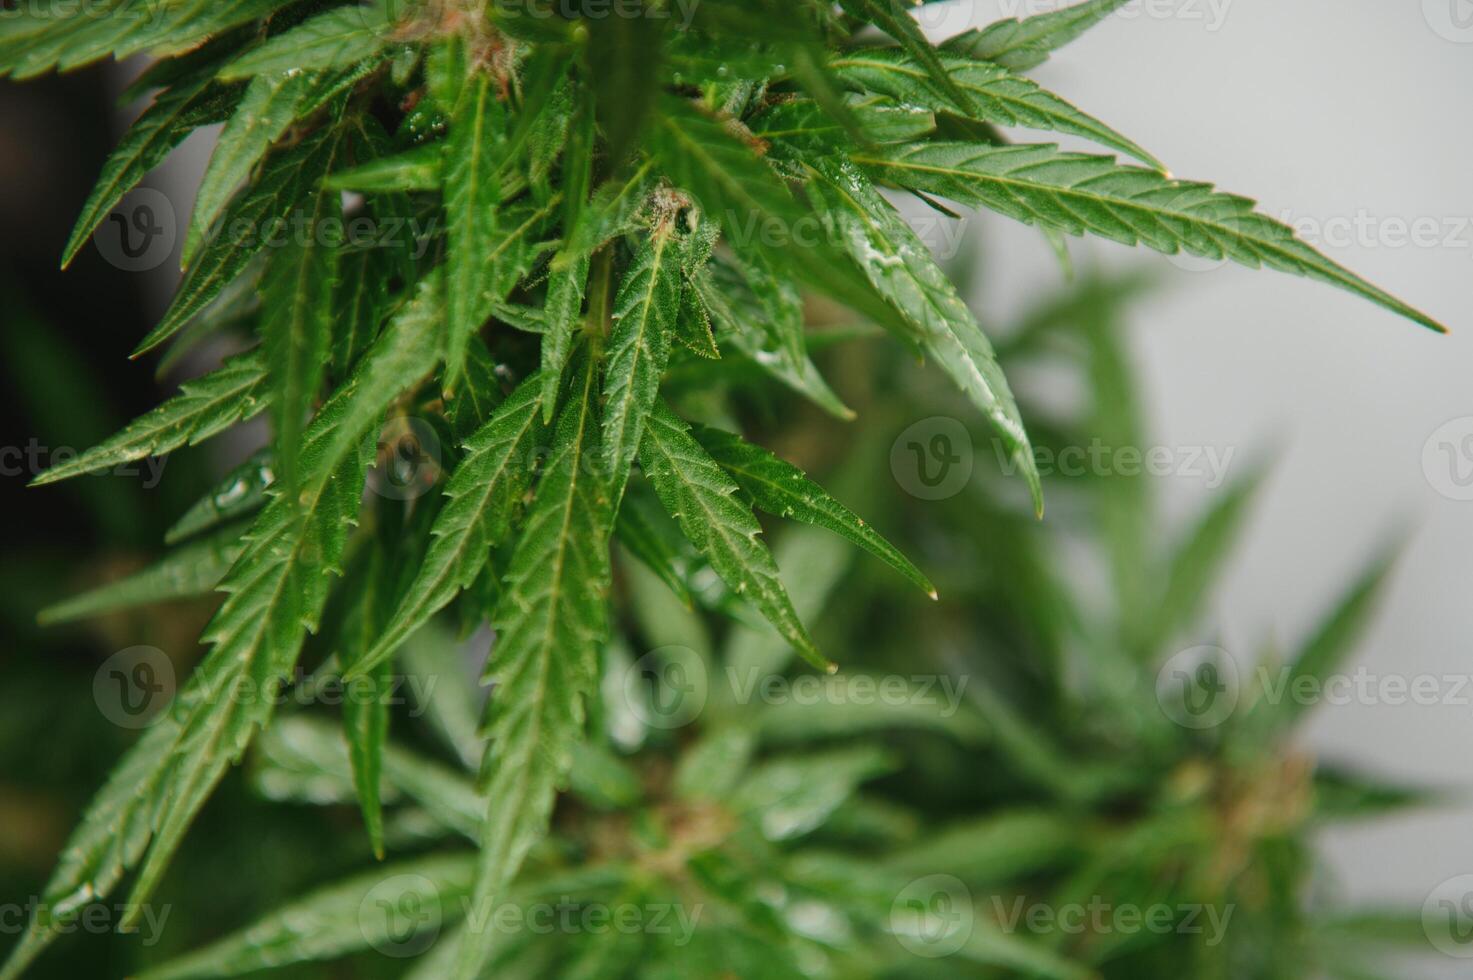 blomma knopp av cannabis satival i de växthus, marijuana blomma knopp bakgrund, ört- medicin foto